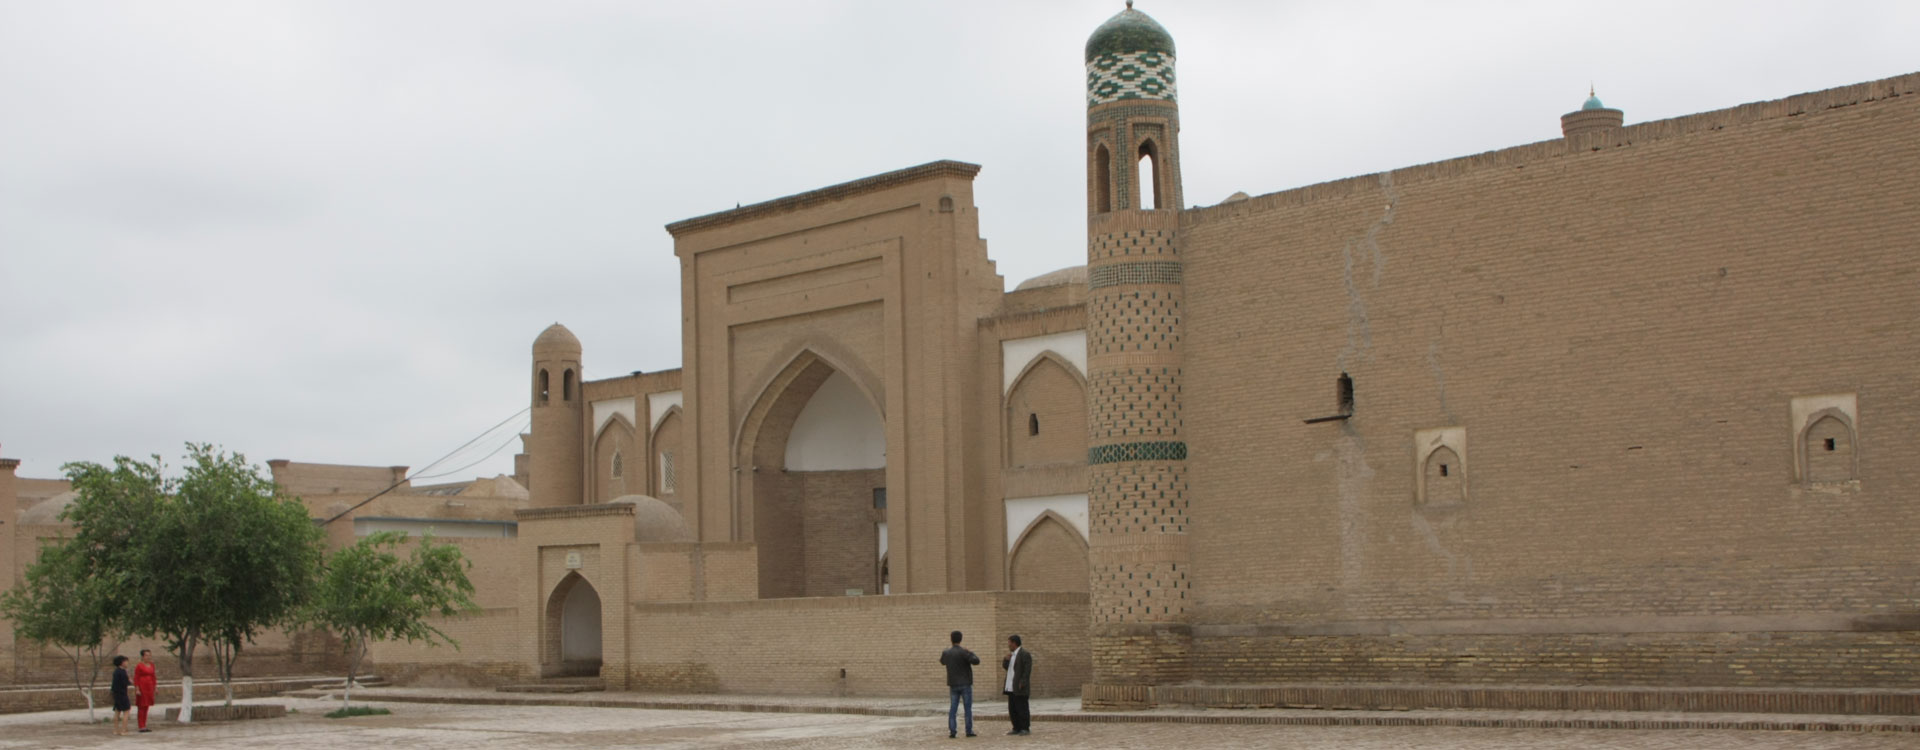 Arab Muhammad-Khan Madrasah